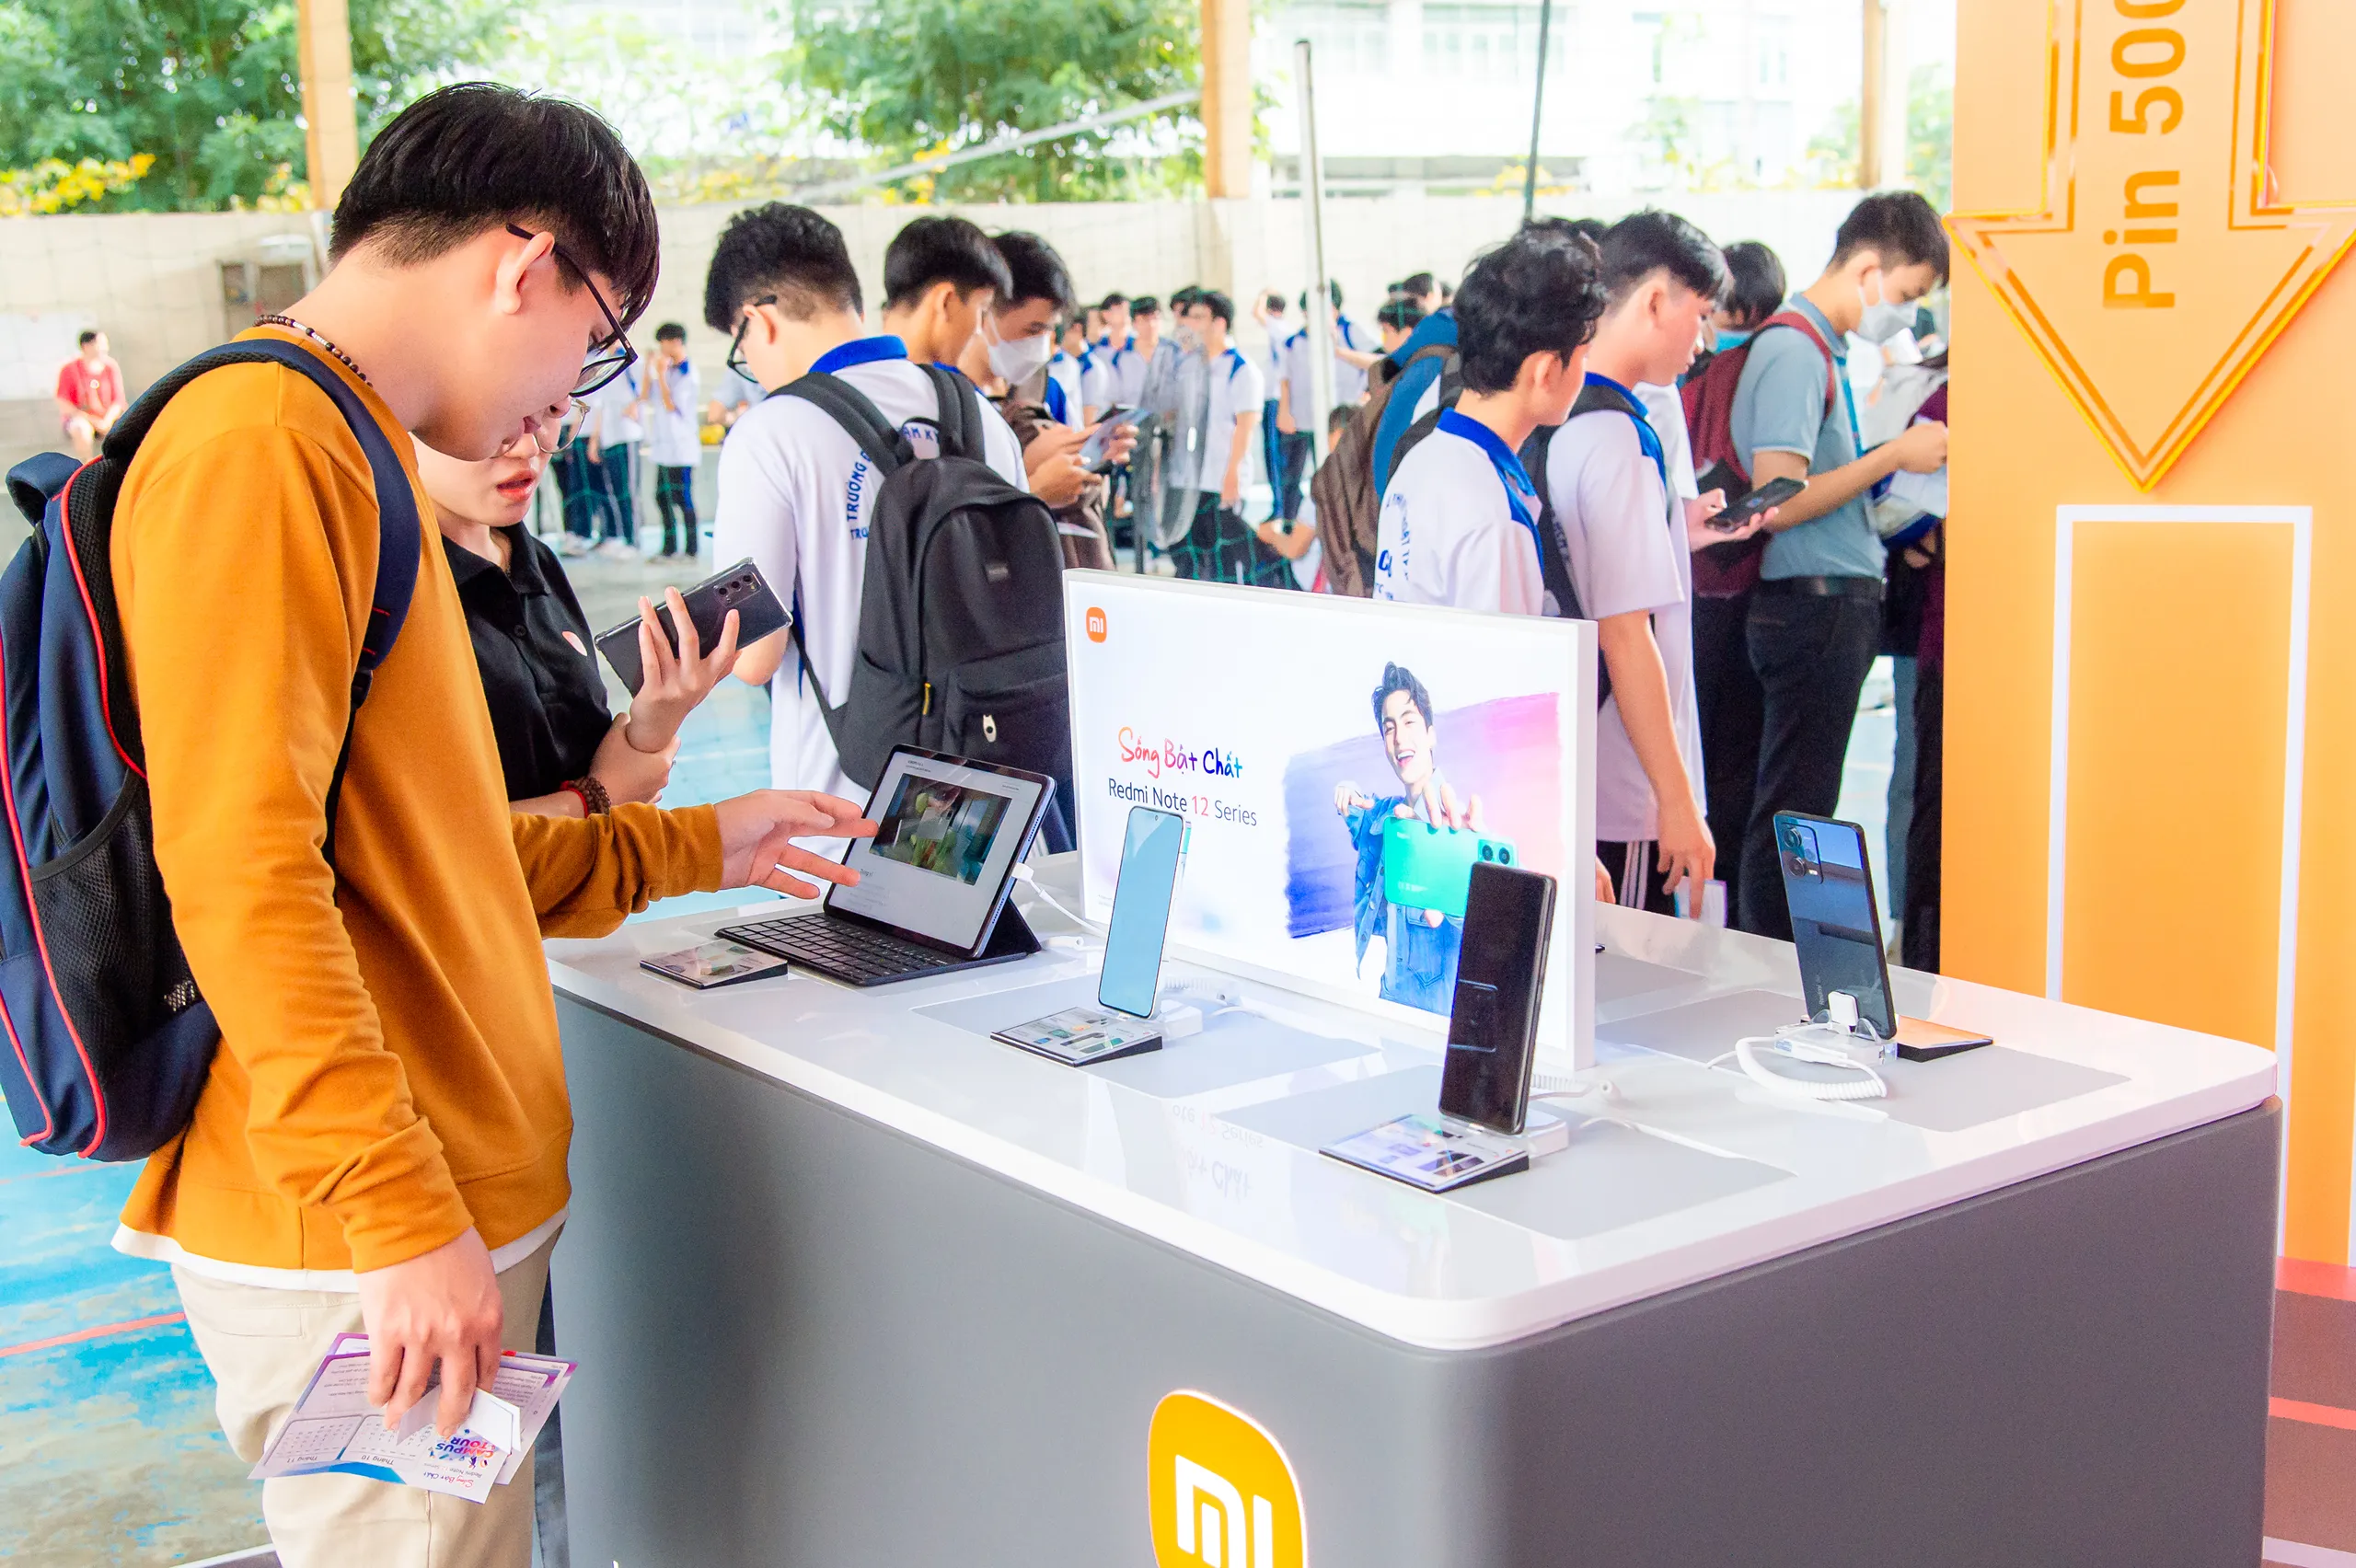 Xiaomi khởi động Xiaomi Campus Tour 2023 sau thành công ấn tượng của Redmi Note 12 Series tại Việt Nam